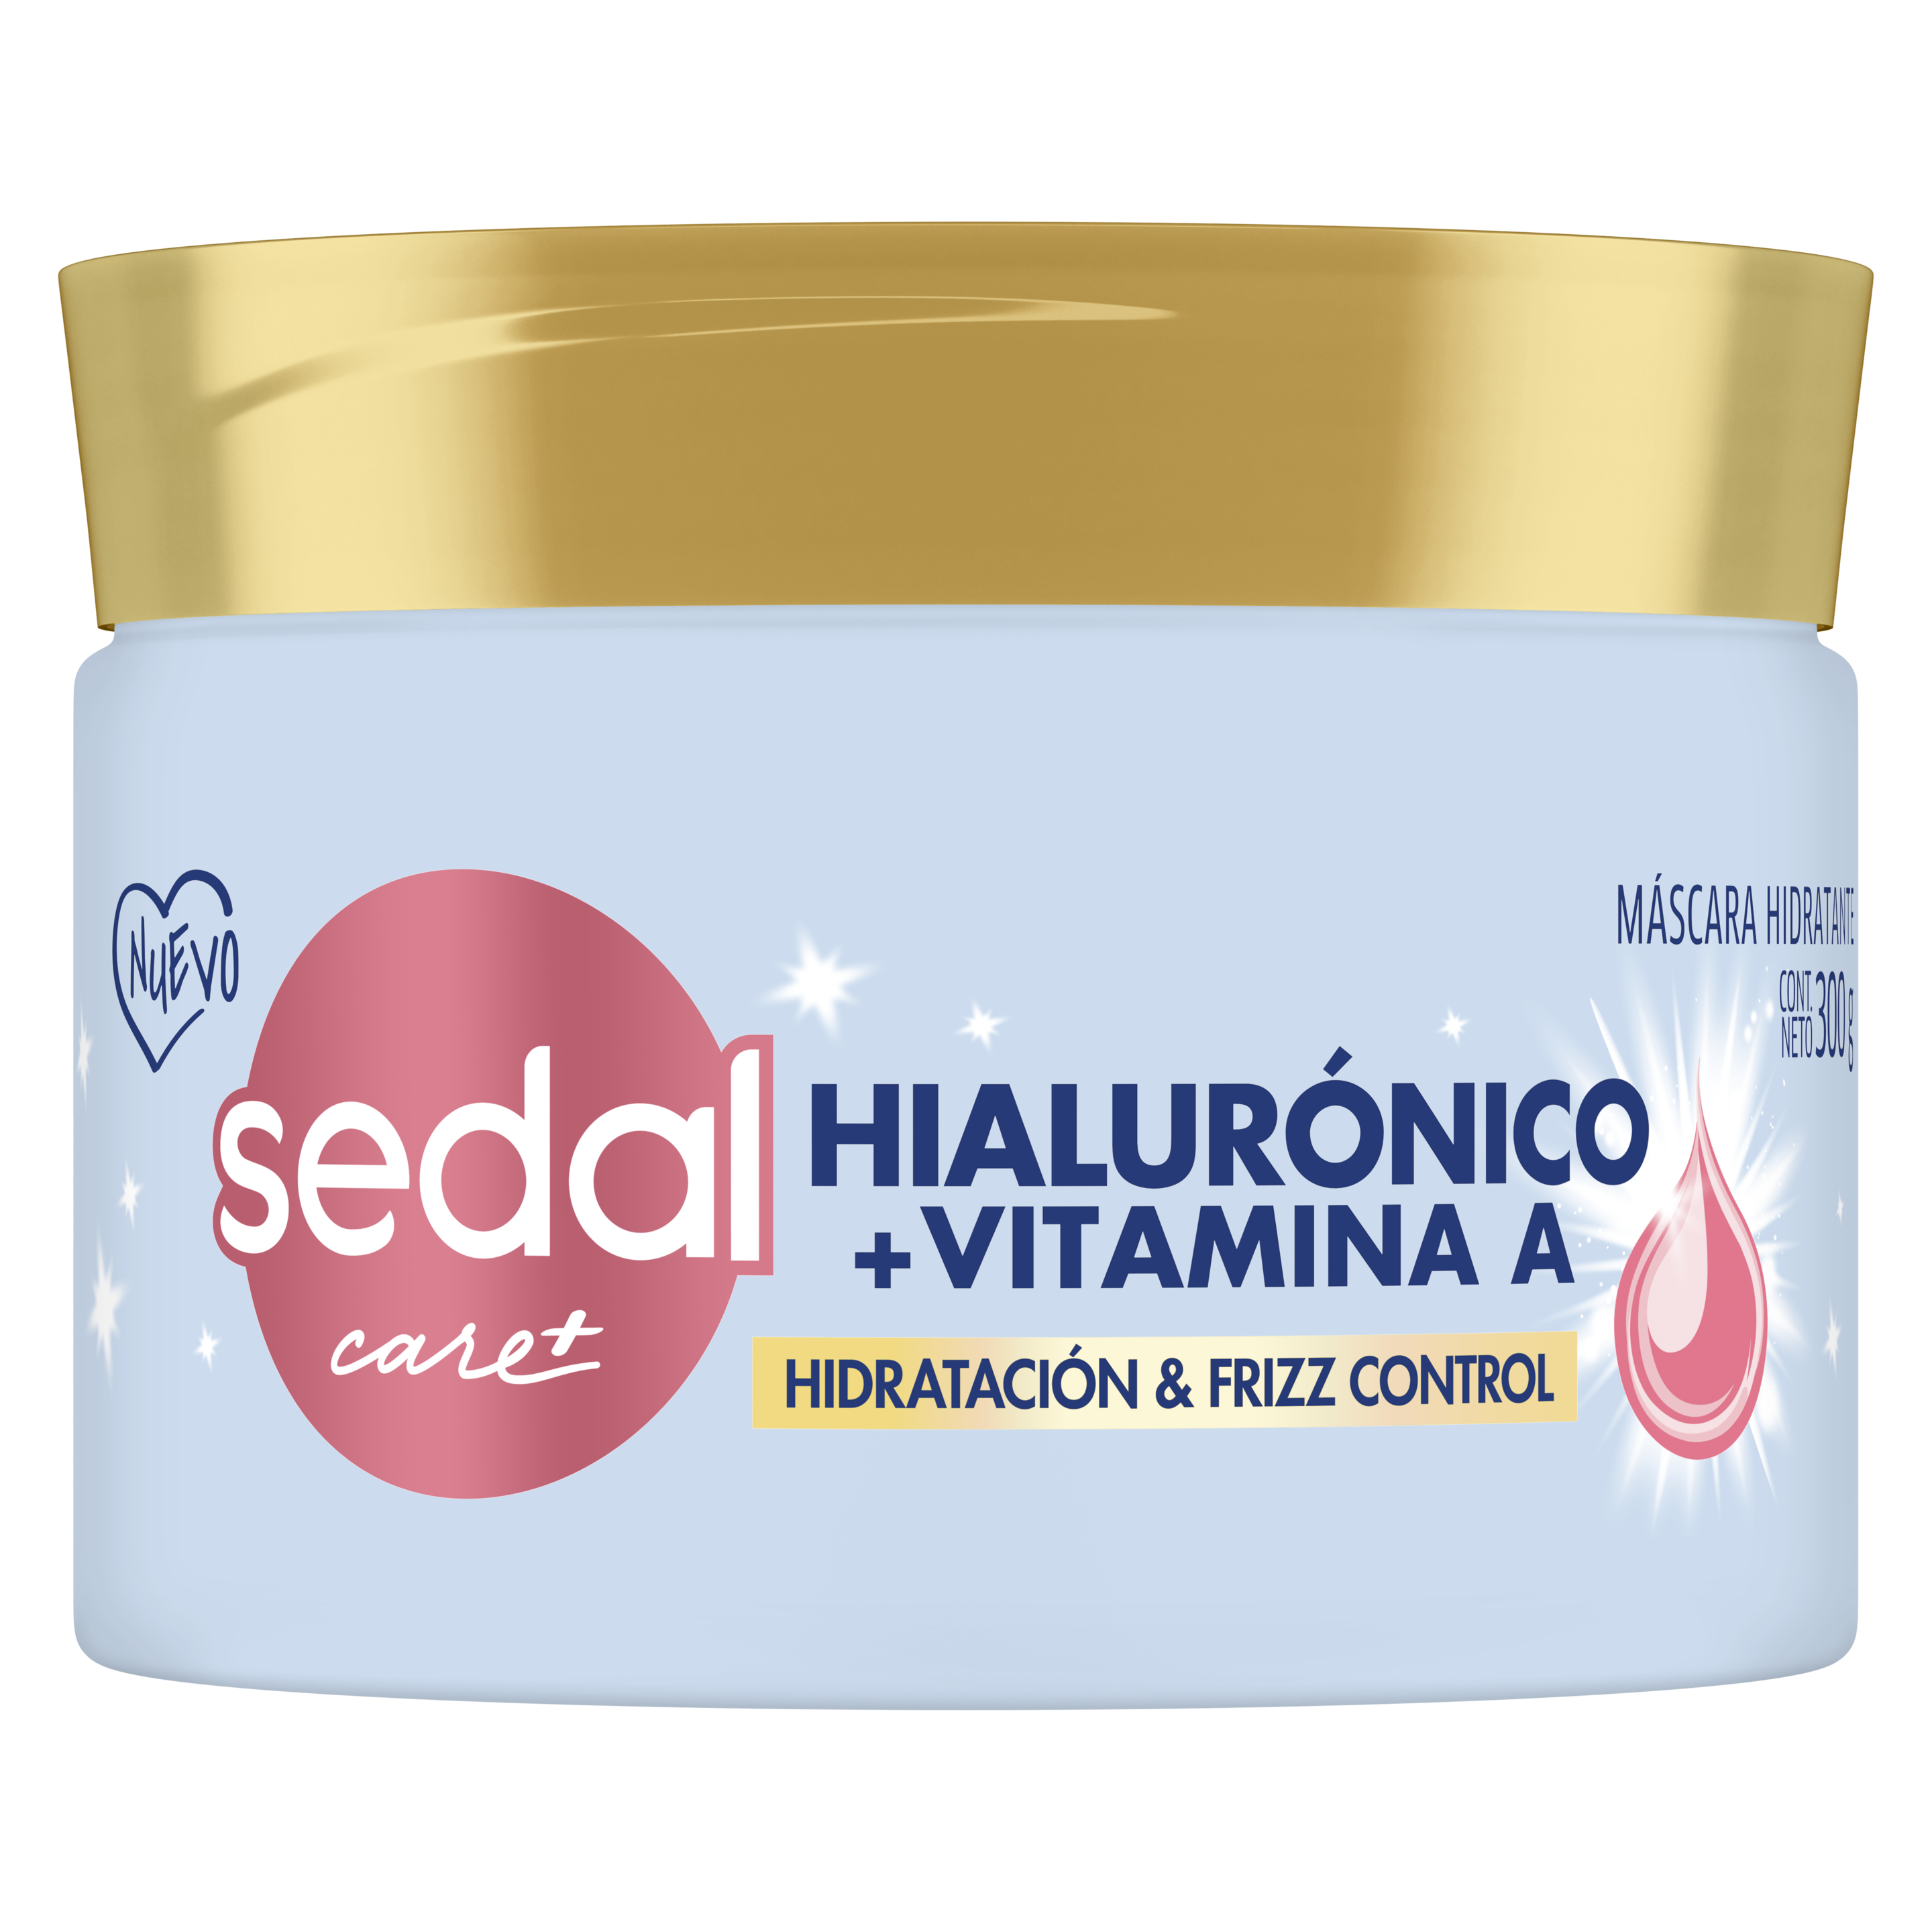 Imagen de envase Hialurónico + Vitamina A Mascara de tratamiento 300gr